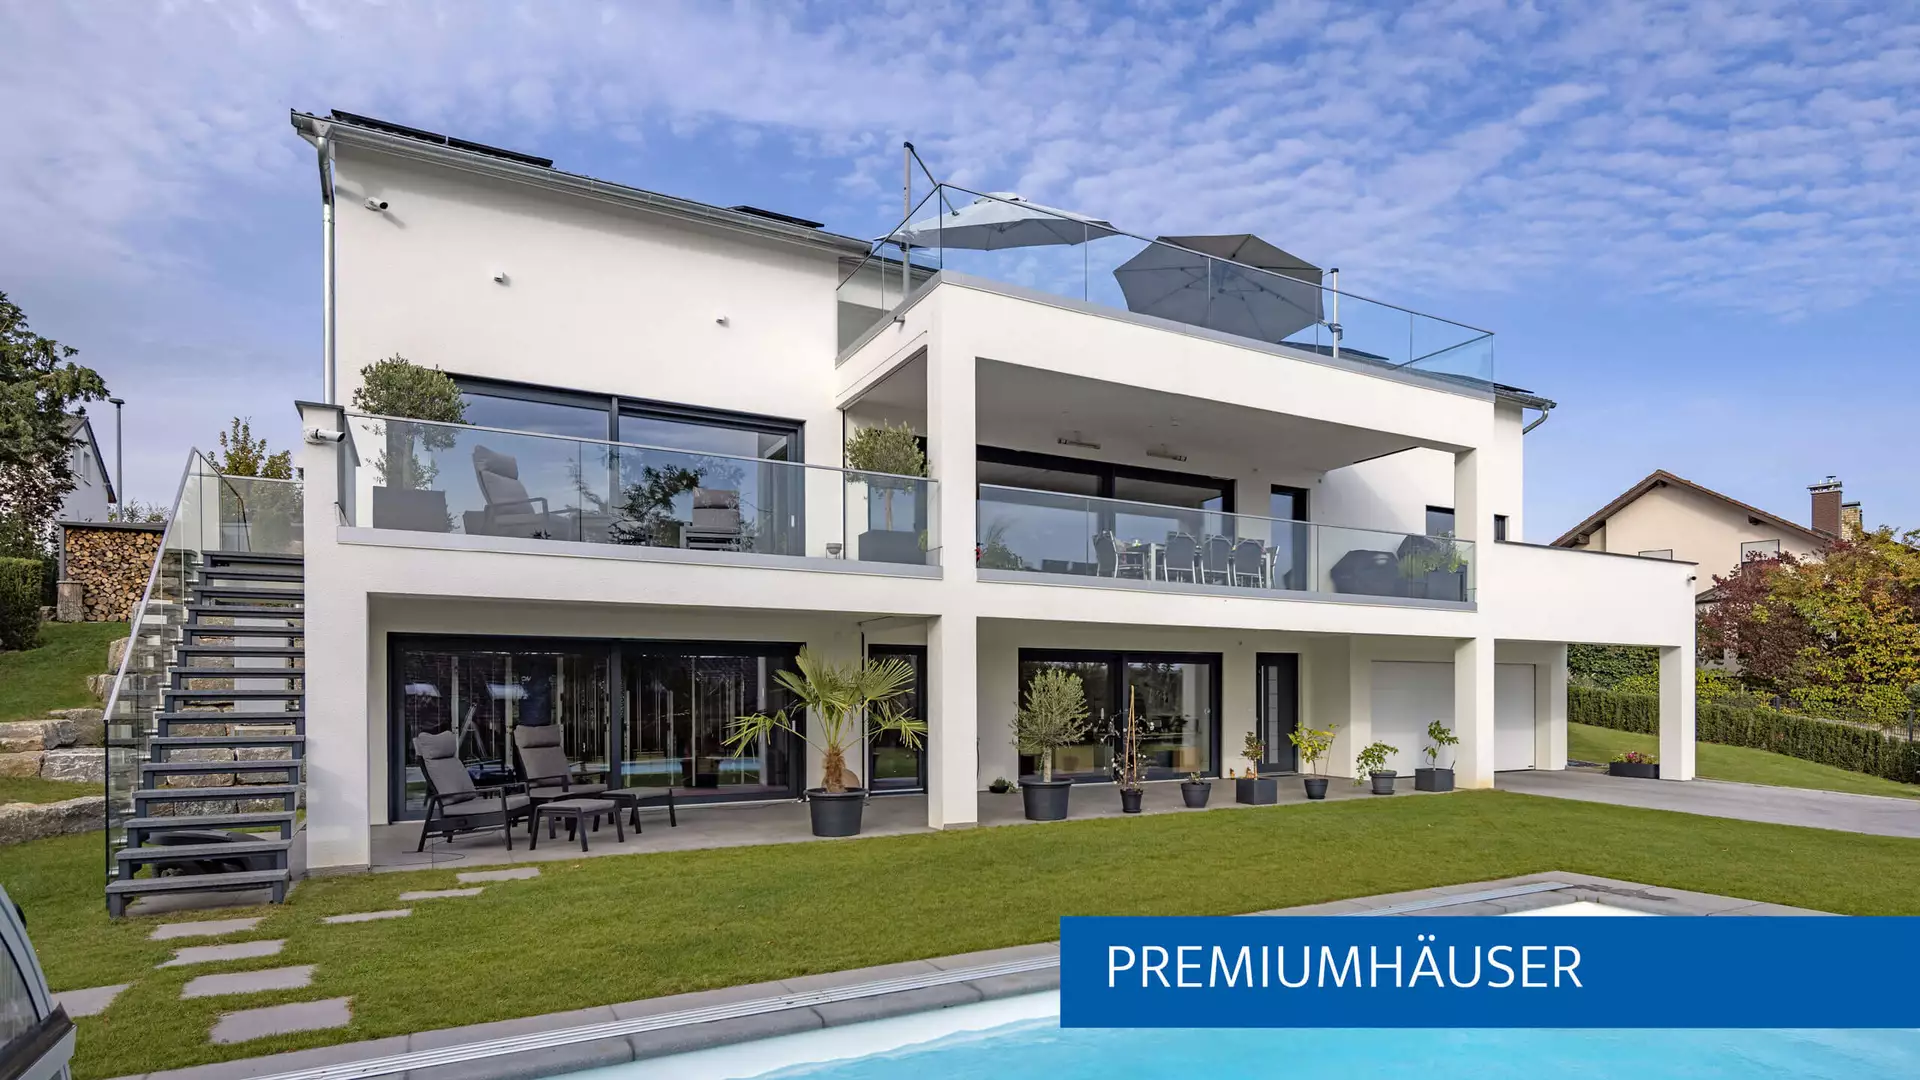 Kundenhaus Familie Grahl von BAUMEISTER-HAUS ist in der Kategorie Premiumhäuser bei den Hausbau Design Awards 2024 nominiert